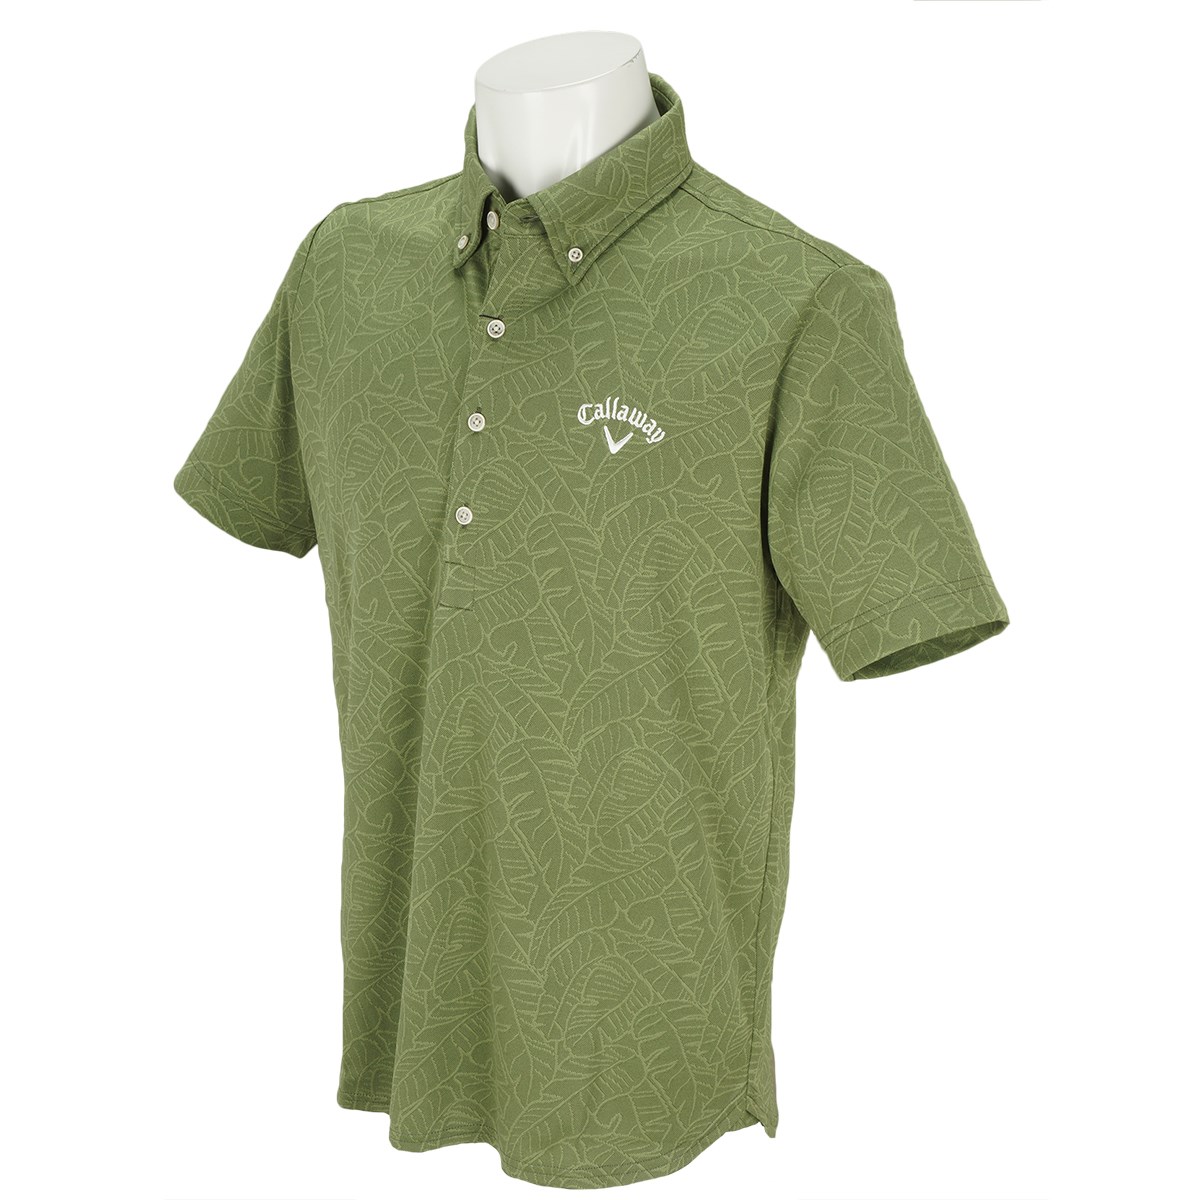 キャロウェイゴルフ(Callaway Golf) リーフ柄ボタンダウンレギュラーカラー半袖ポロシャツ 